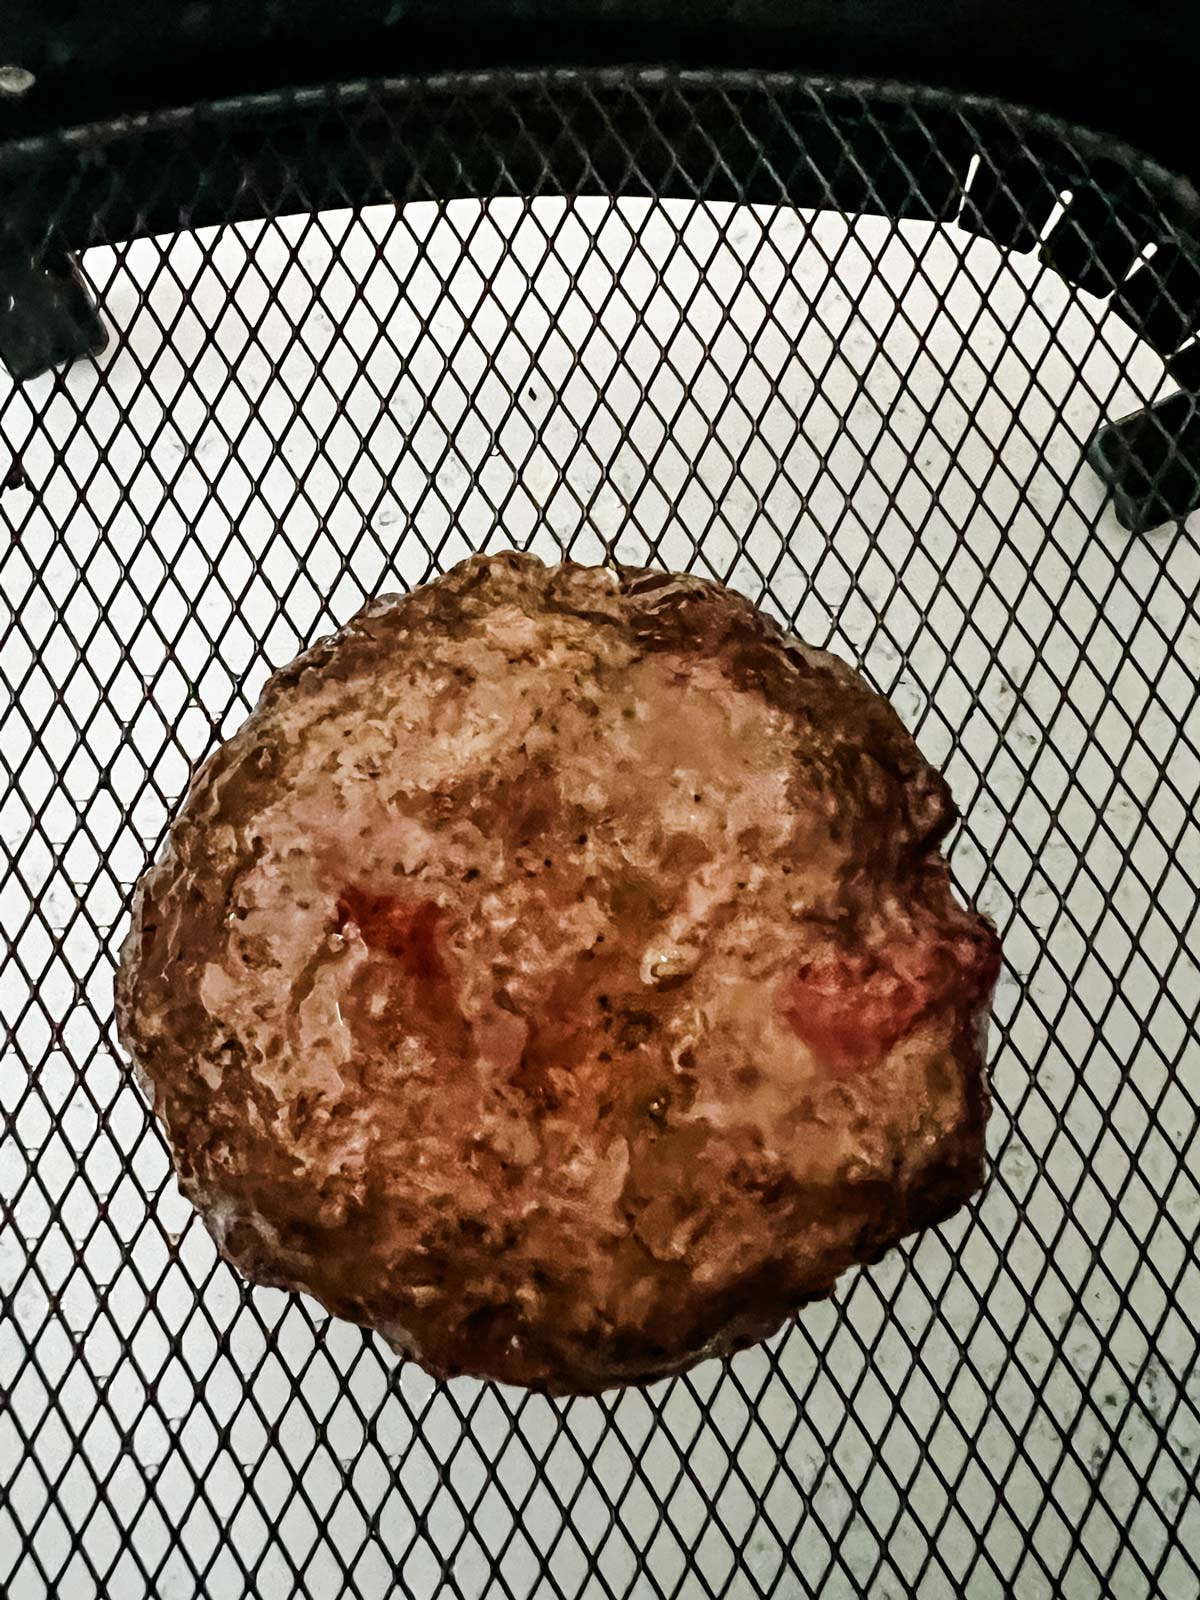 A burger patty in an air fryer basket.